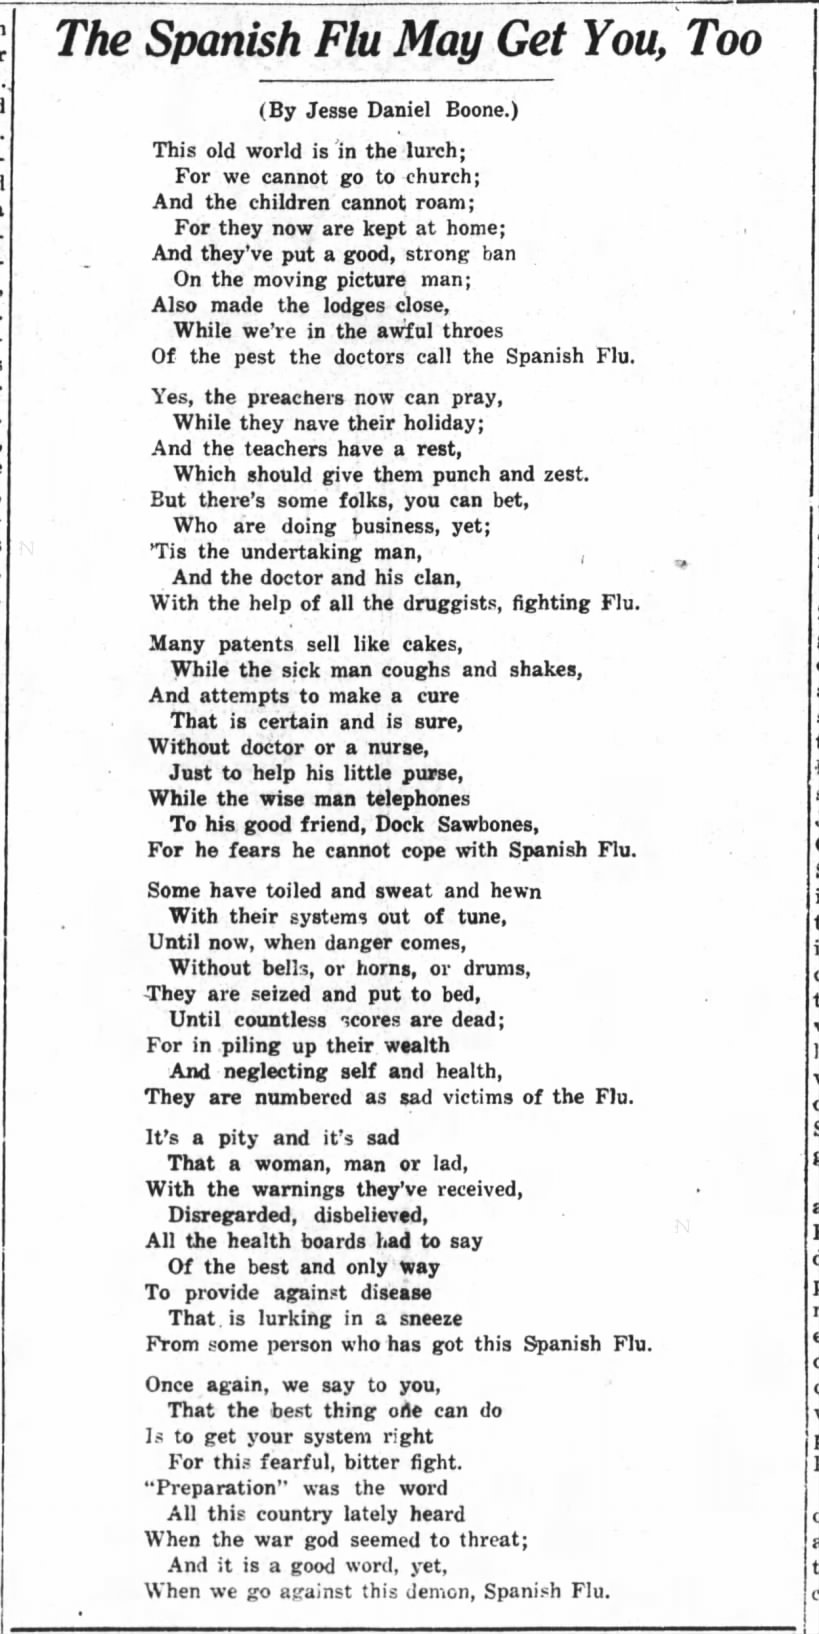 Spanish Flu Poem by Jesse Daniel Boone